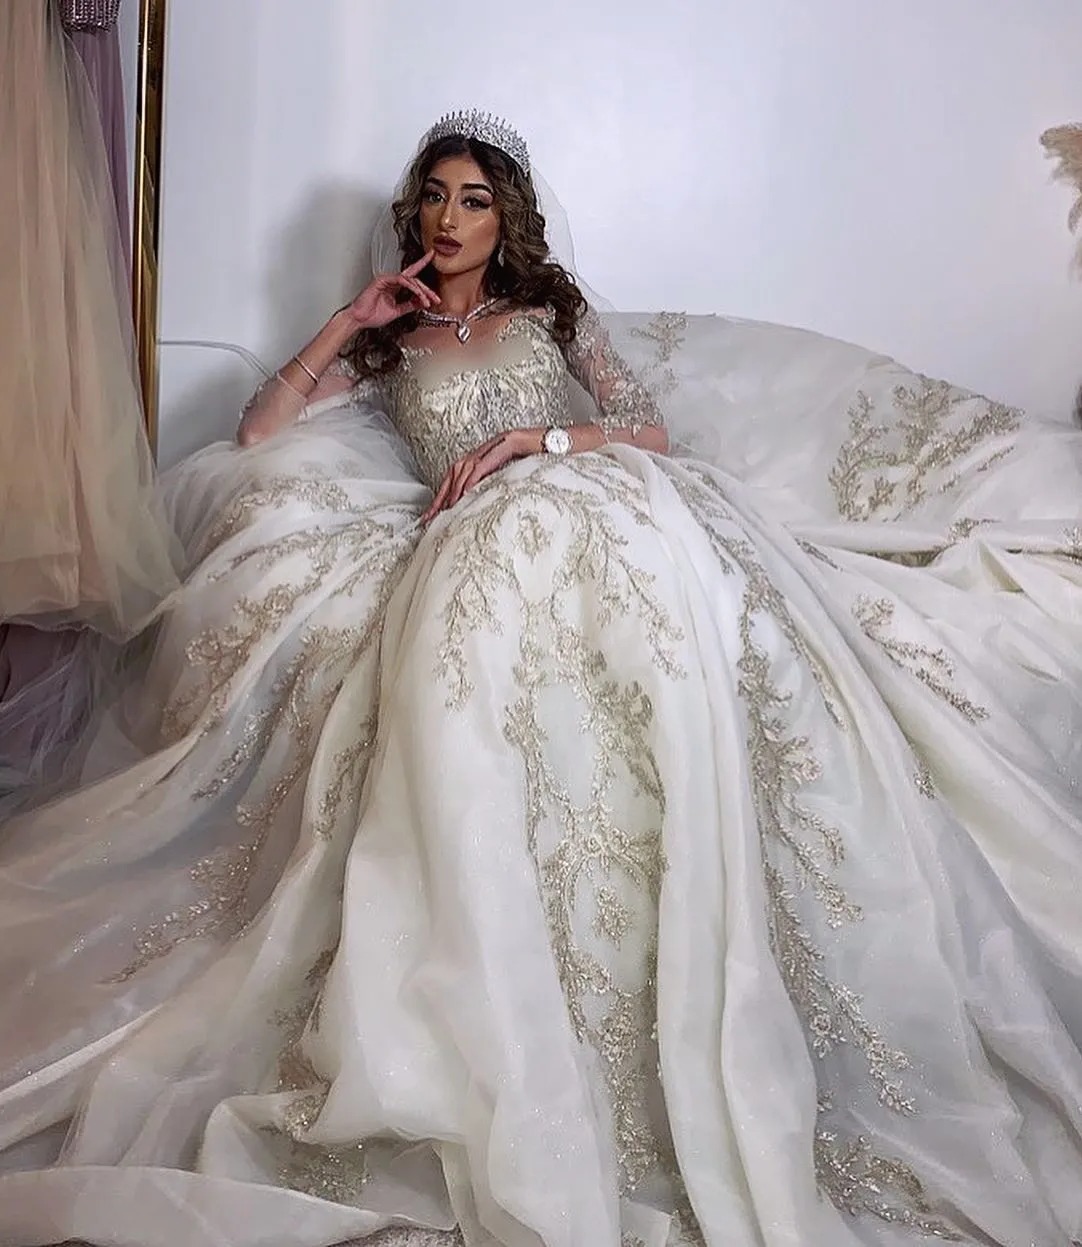 Khan wandte sich online an das Brautmodel Sumaira